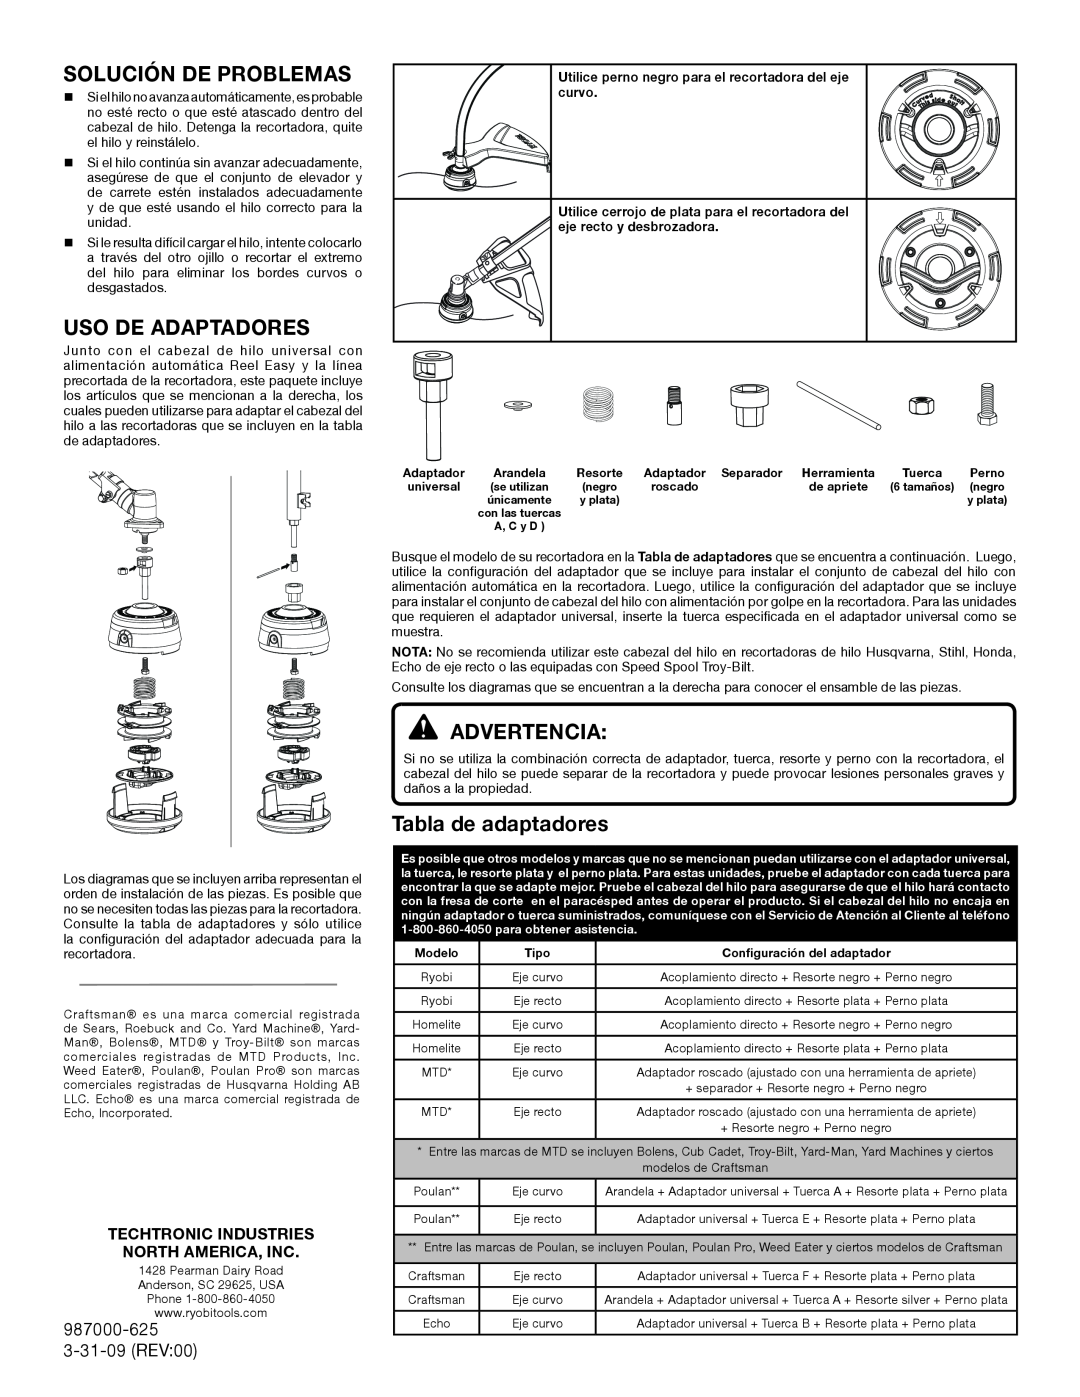 Ryobi AC04151T Solución De Problemas, Uso De Adaptadores, Advertencia, Tabla de adaptadores, 987000-625 3-31-09 REV00 